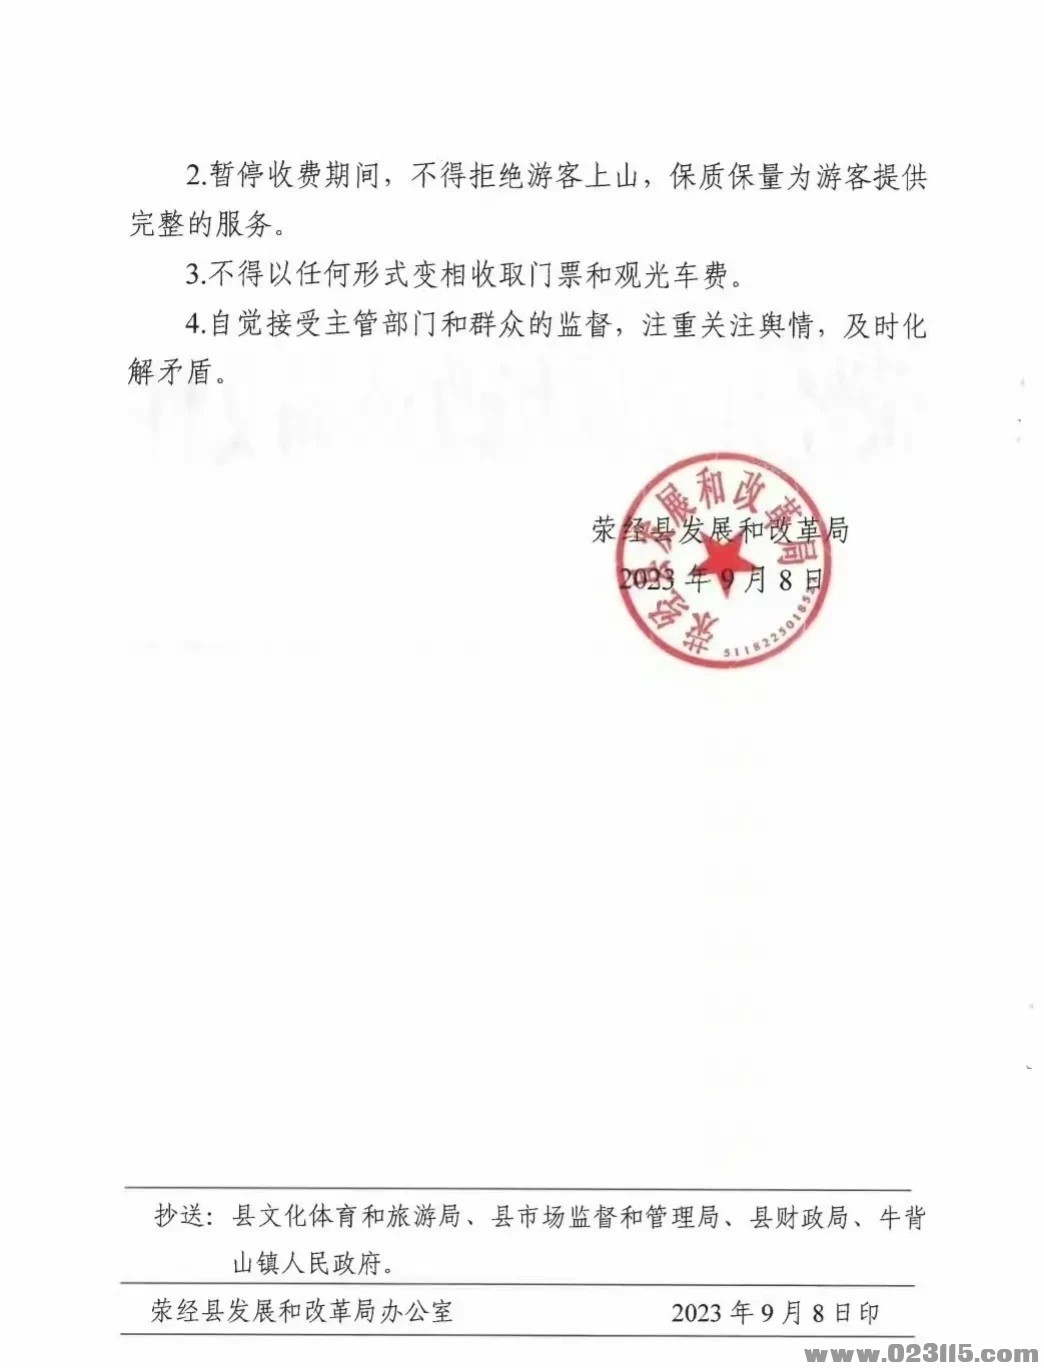 荣经县发展和改革局关于牛背山景区暂停收费的通知